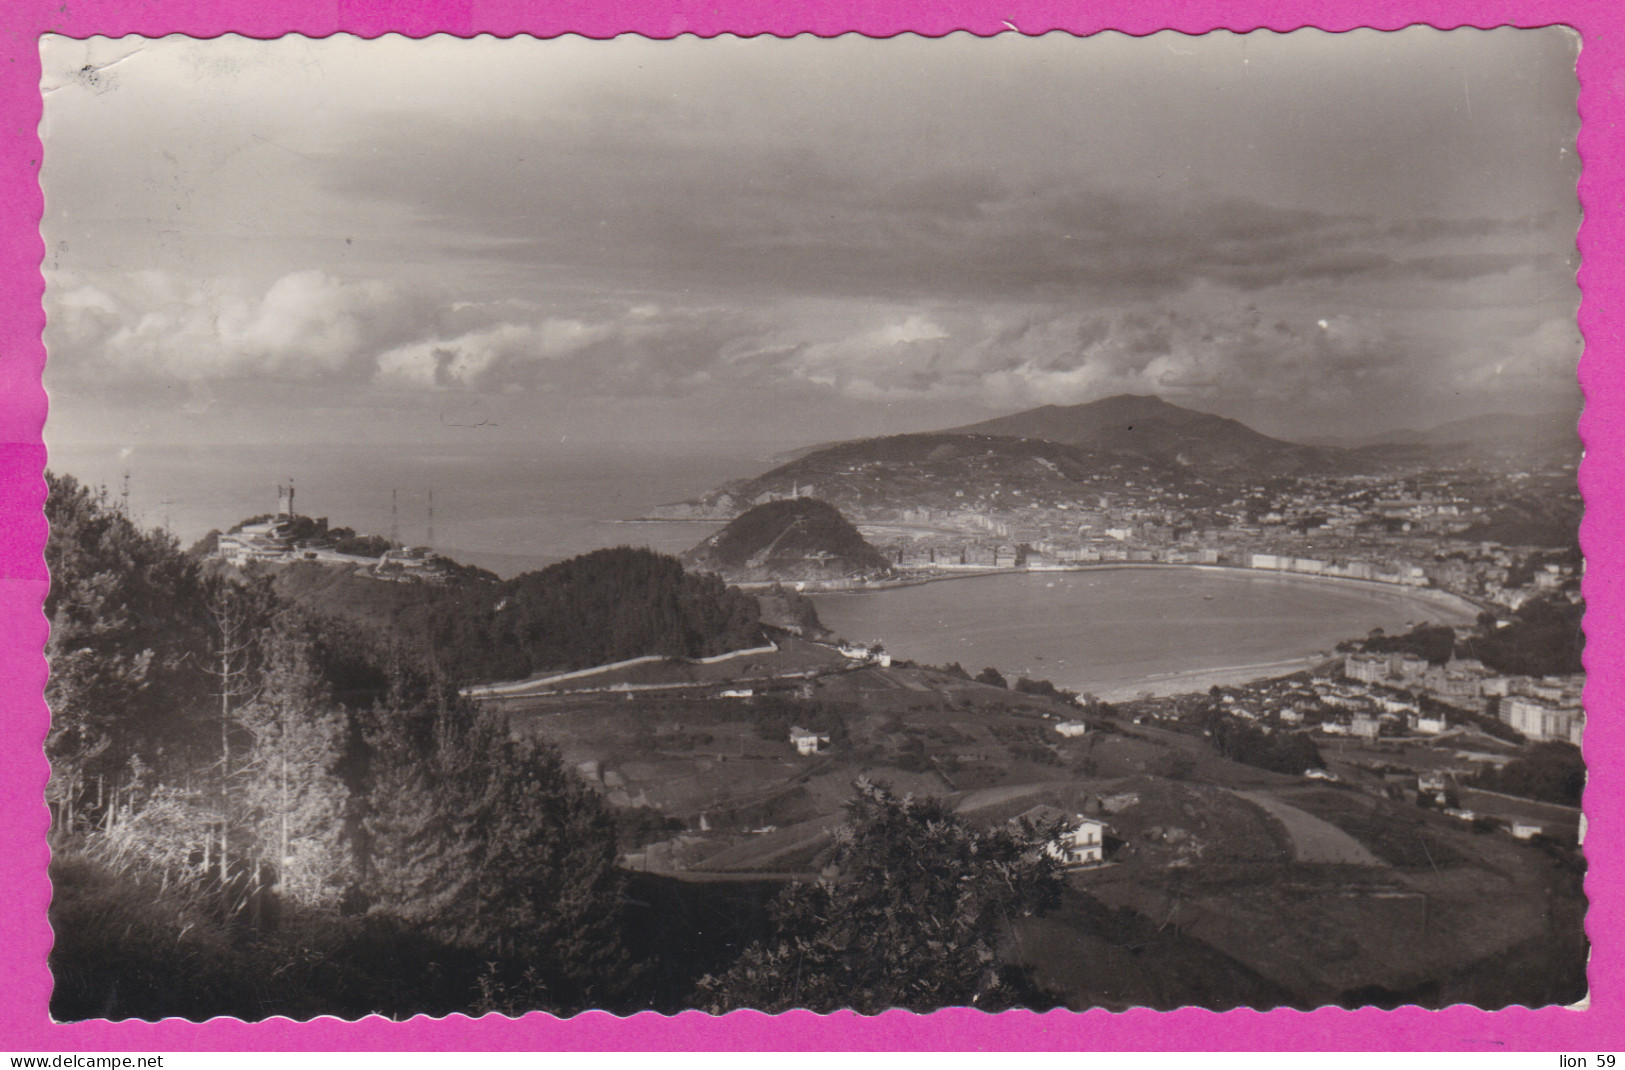 293808 / Spain - San Sebastián Bay Of Biscay  Vista General PC 1961 USED 3 Pta General Francisco Franco , Vera To France - Brieven En Documenten